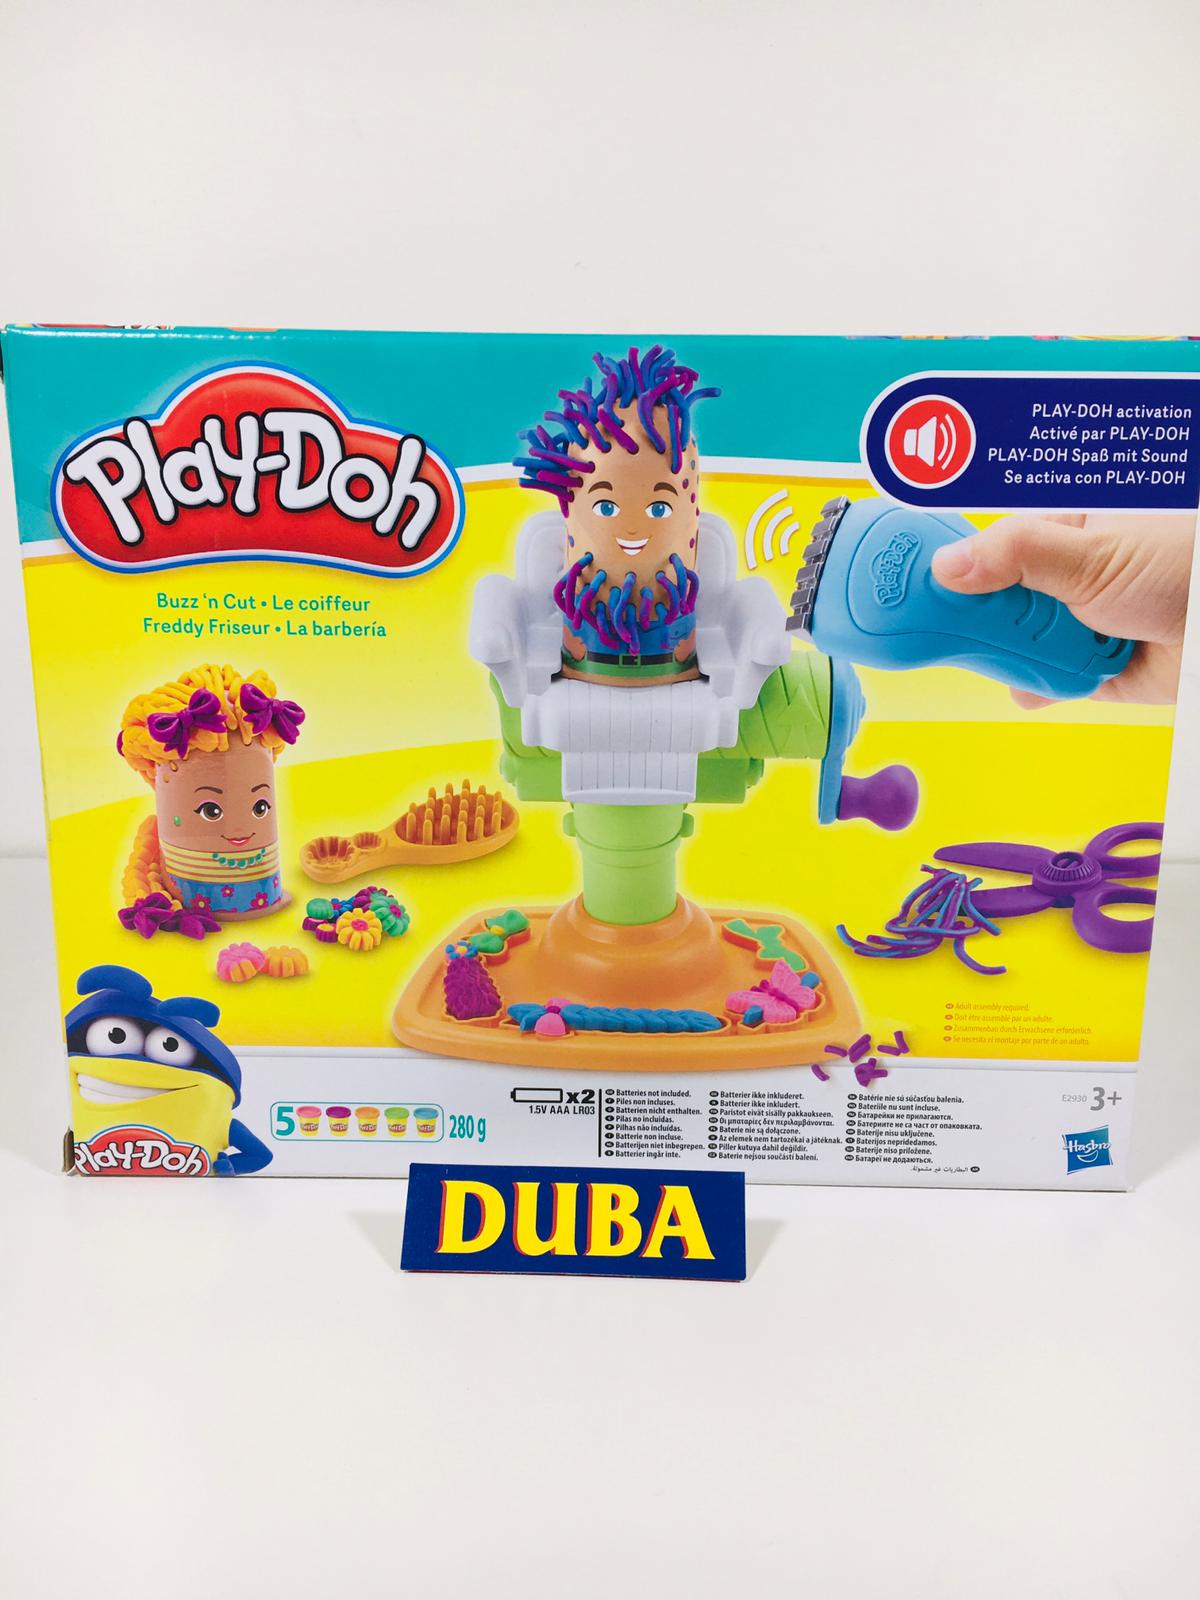 La Barberia Play-Doh